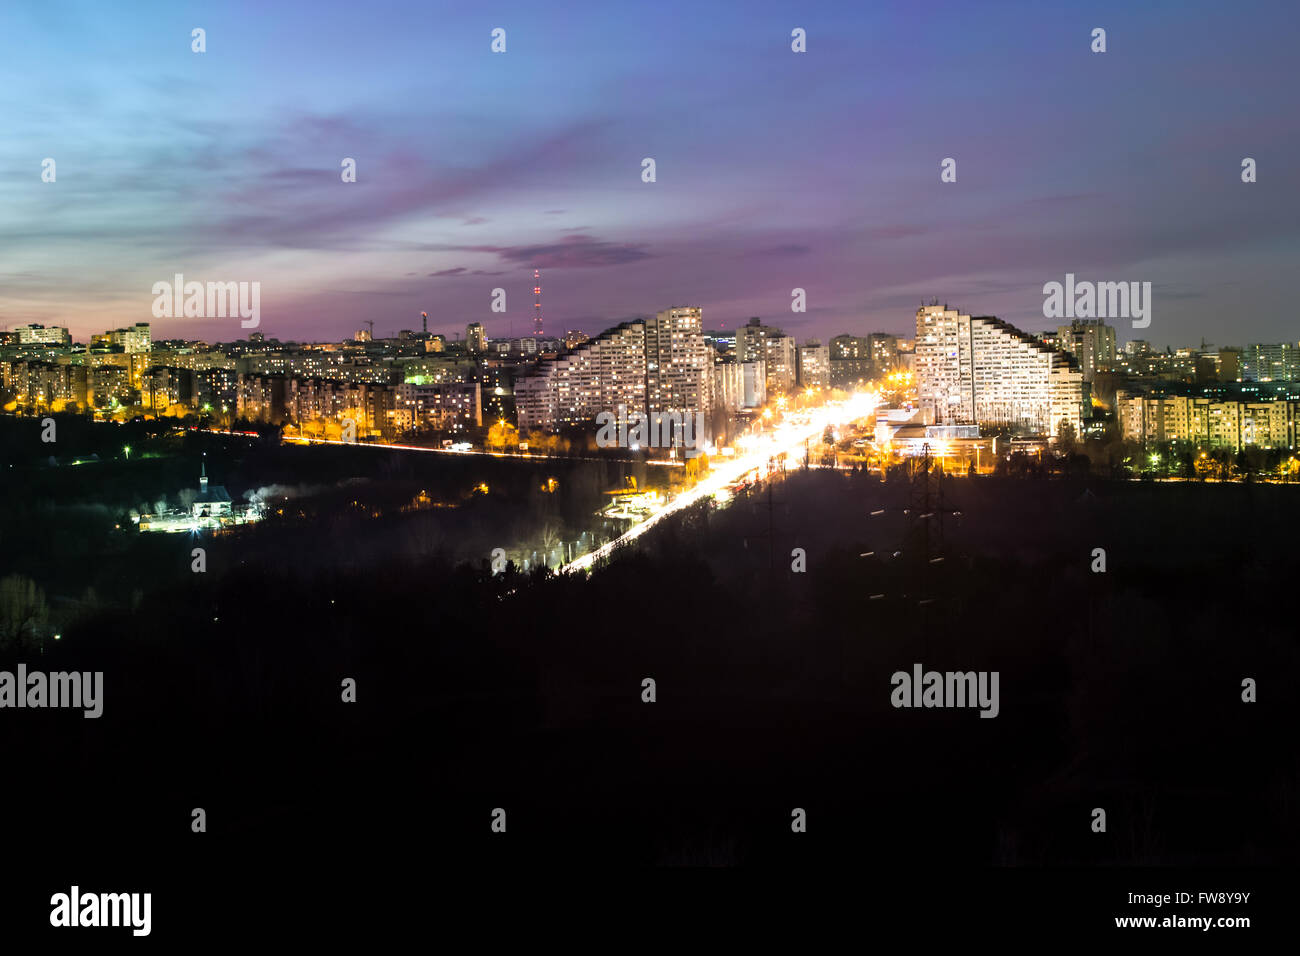 Bild der nächtlichen Stadt Chisinau, Botanica, Stadttore, die funkelnden Lichter der Stadt in der Nacht, die Spuren der Autolichter Stockfoto